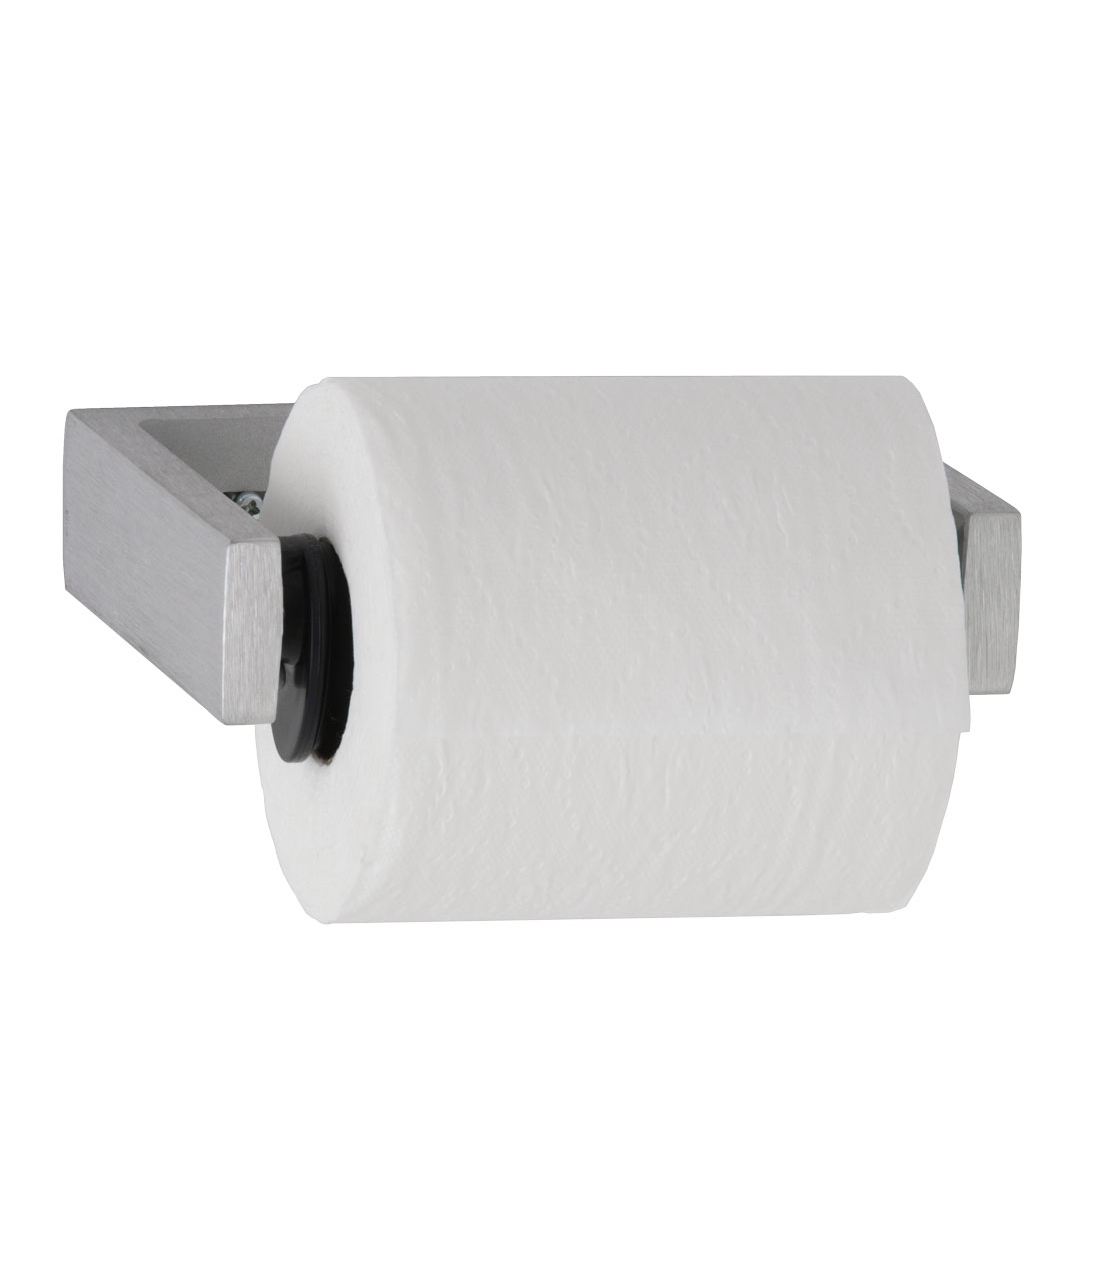 Category B2740 Regular Roll Toilet Paper Dispensers Bobrick Dispenser Tissue 2 Roll